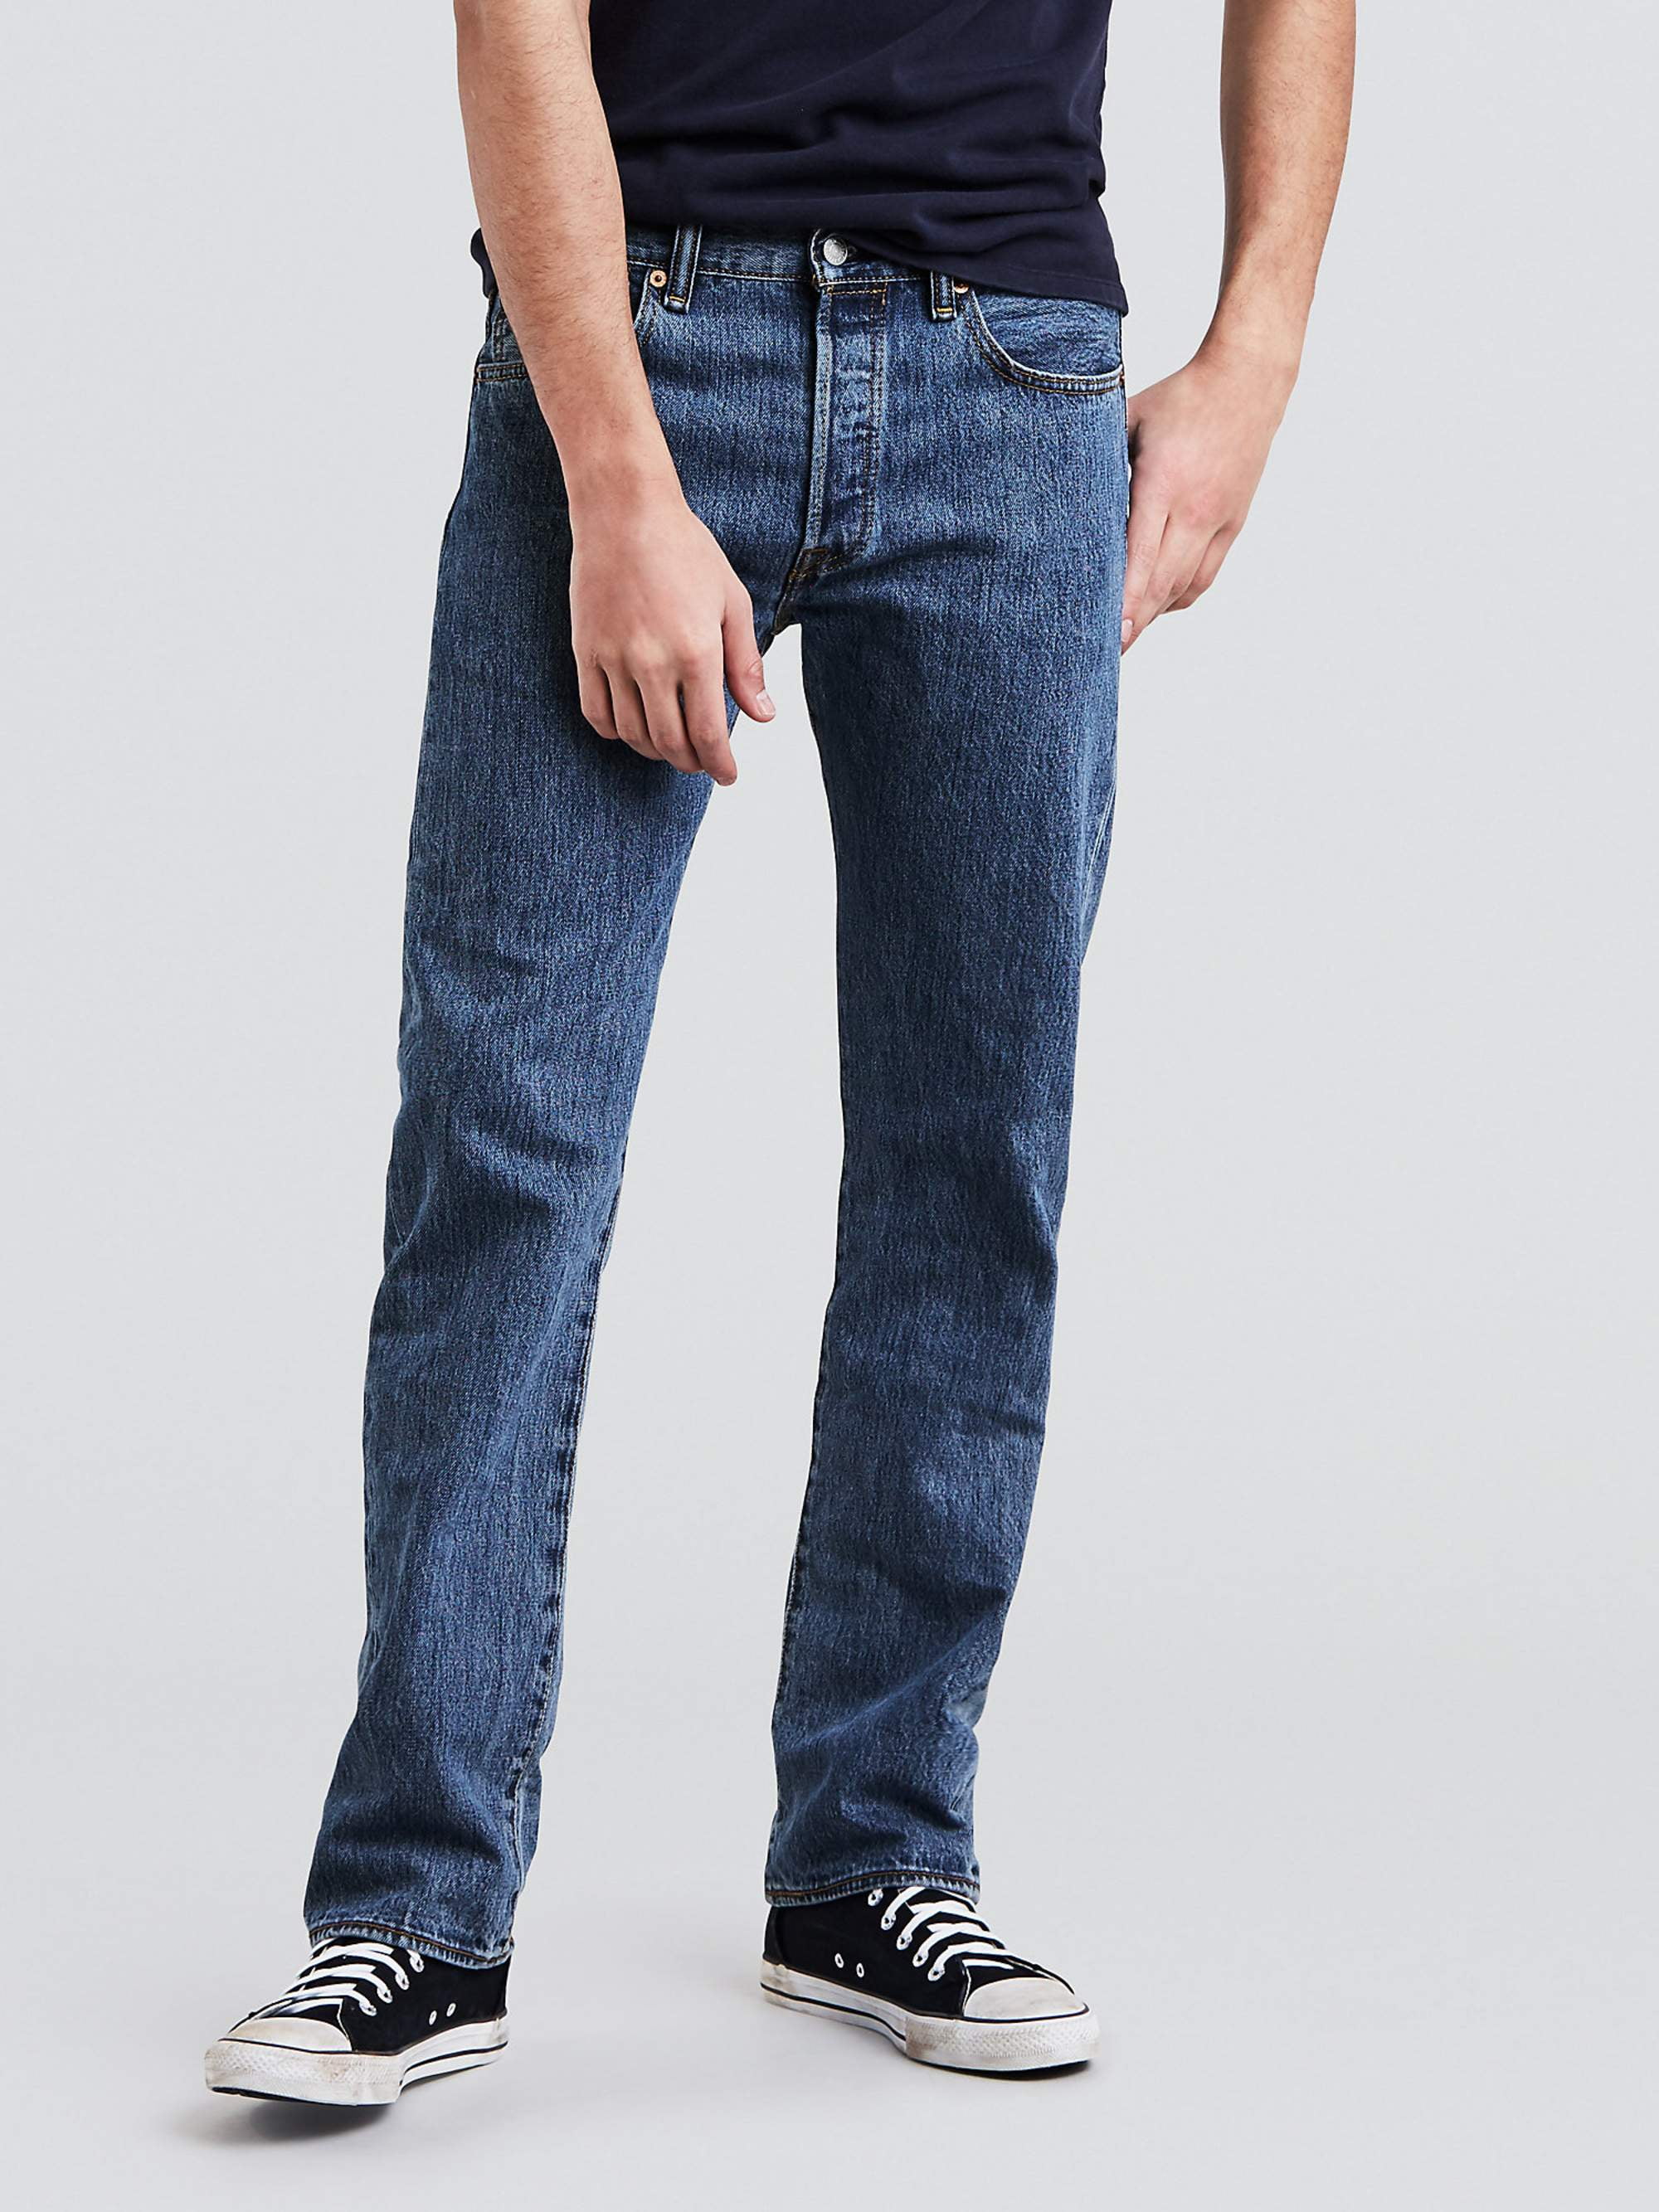 Levi's Men's 501 Original Fit Jeans -